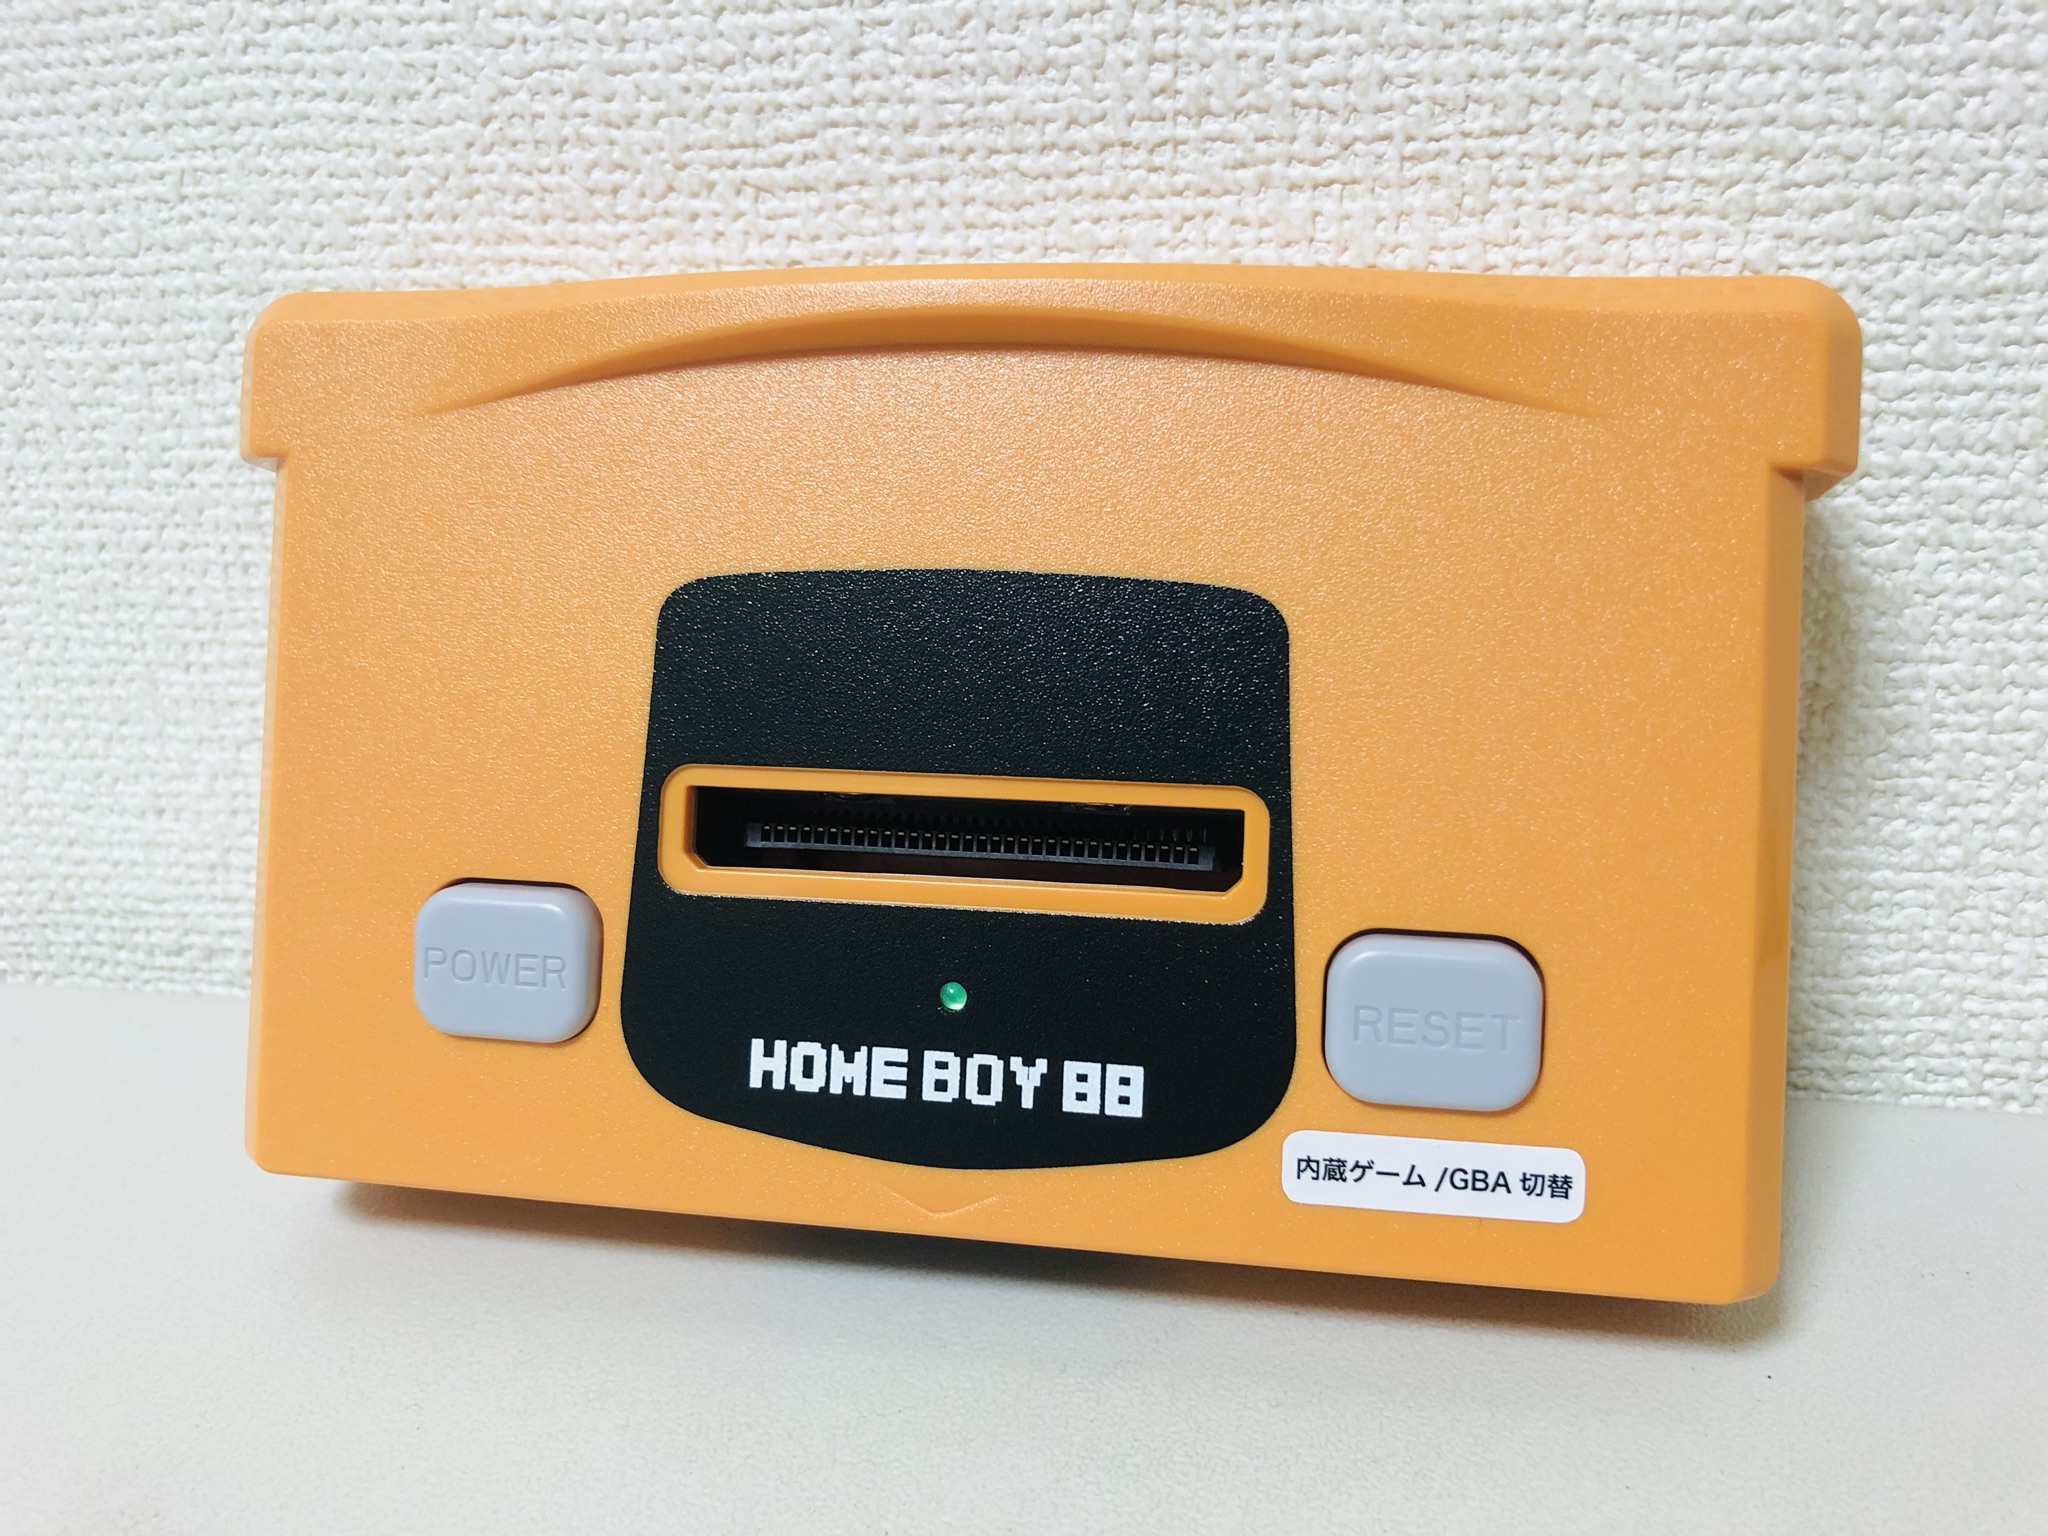 ゲームボーイアドバンス Gba 互換機 Homeboy の紹介 ドンキで購入 れとろとろ ゲームブログ